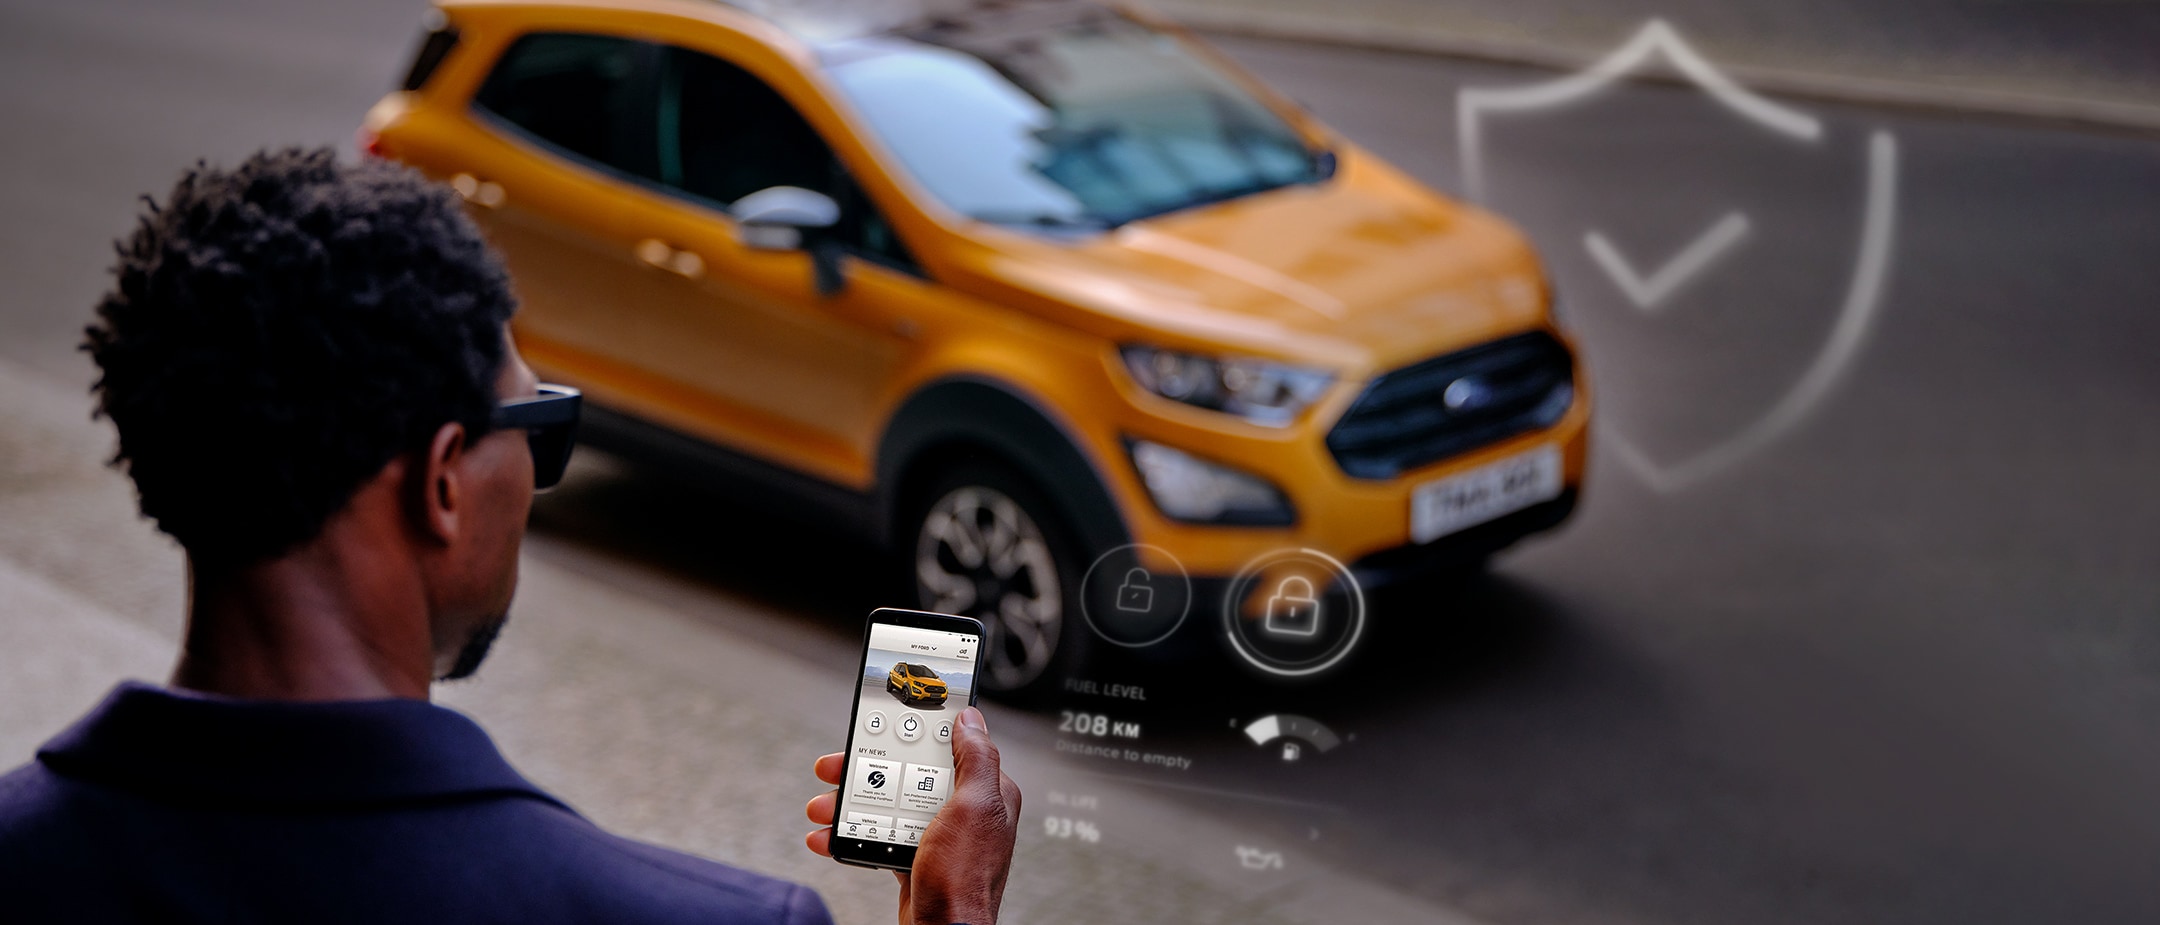 Mann mit Smartphone nutzt mobile App neben Ford EcoSport